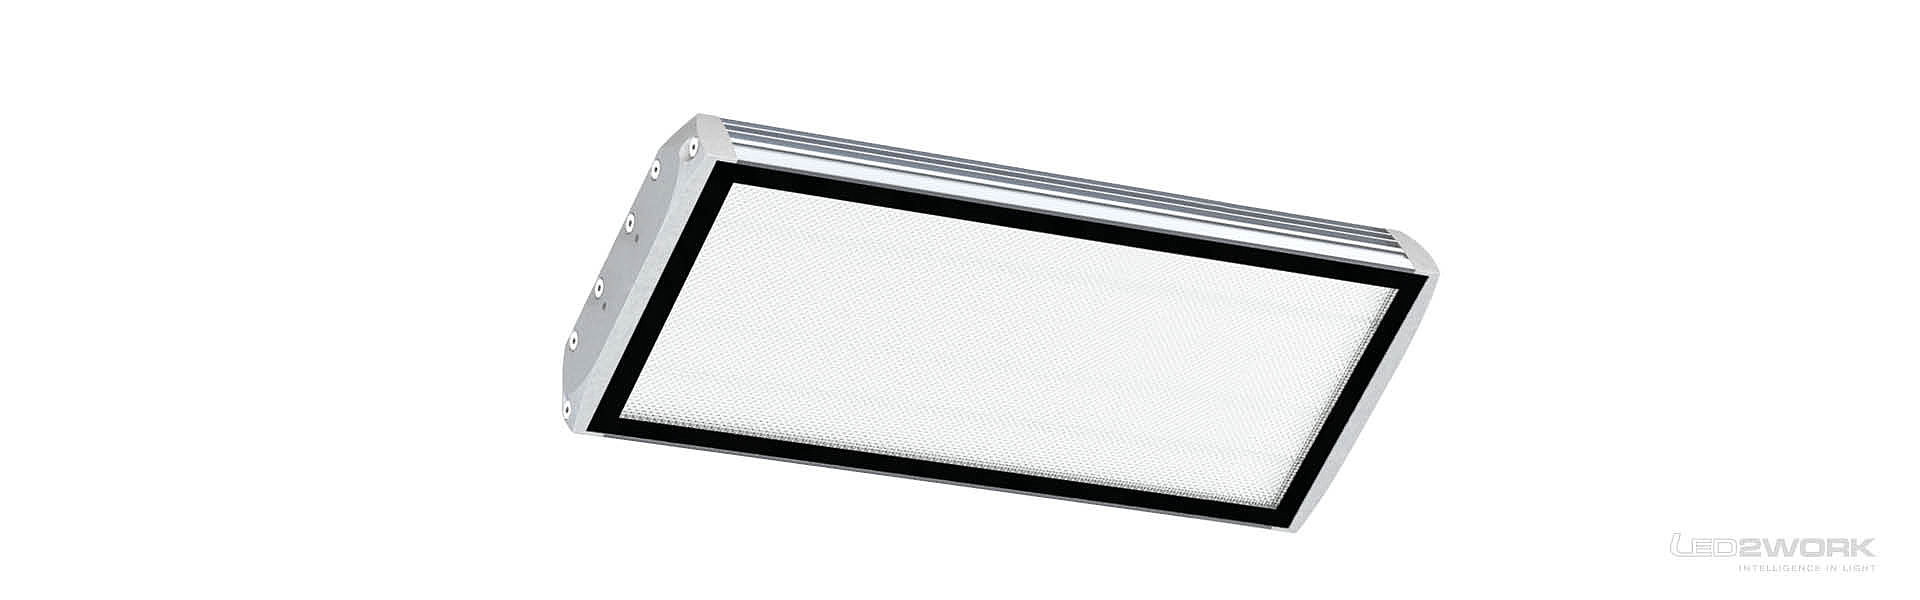 Illustration of LED machine light | LED surface mounted light | FIELDLED_II_surface mounted - LED2WORK